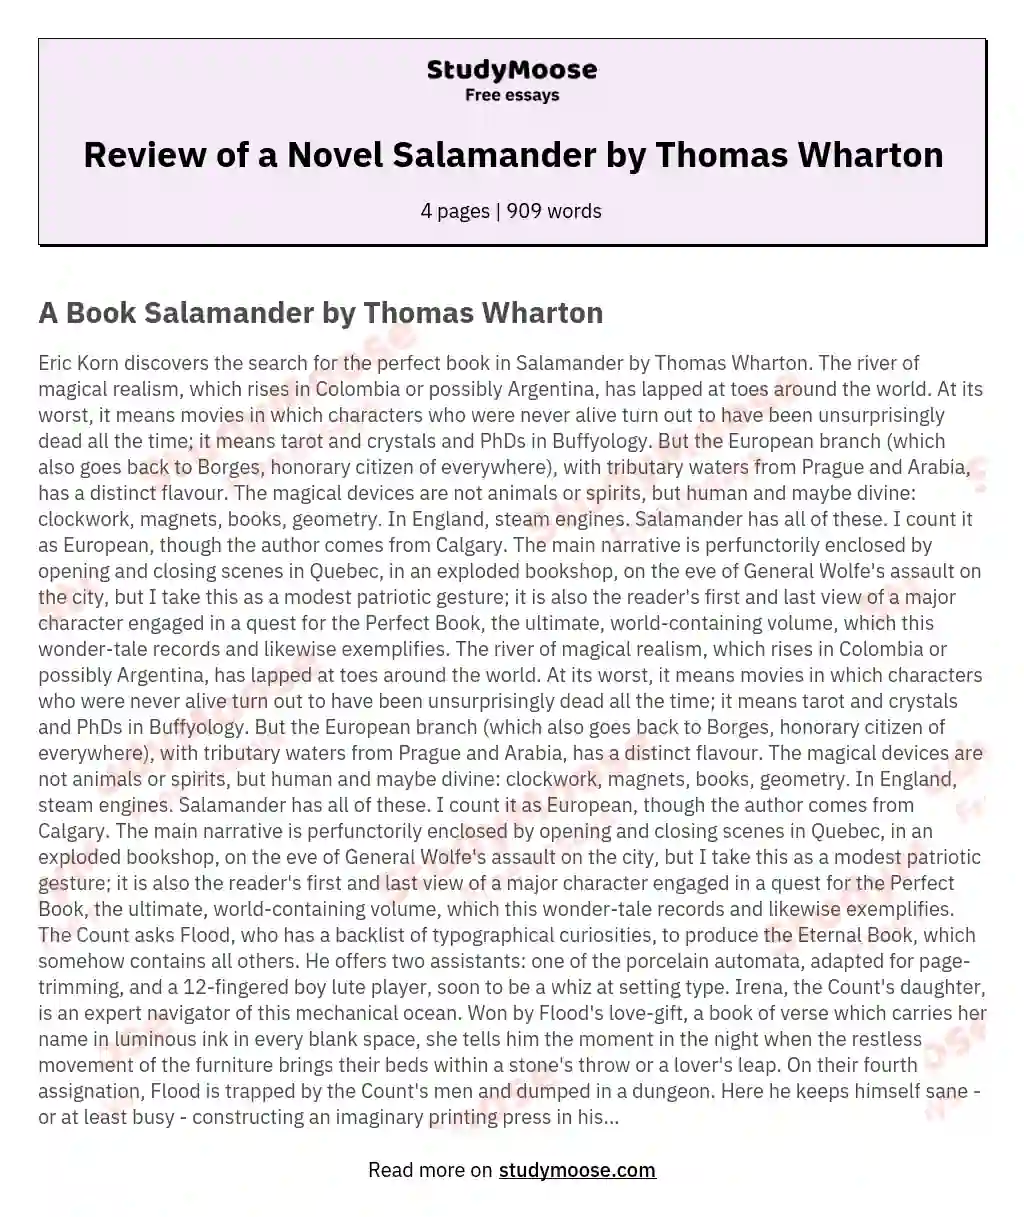 Review of a Novel Salamander by Thomas Wharton essay